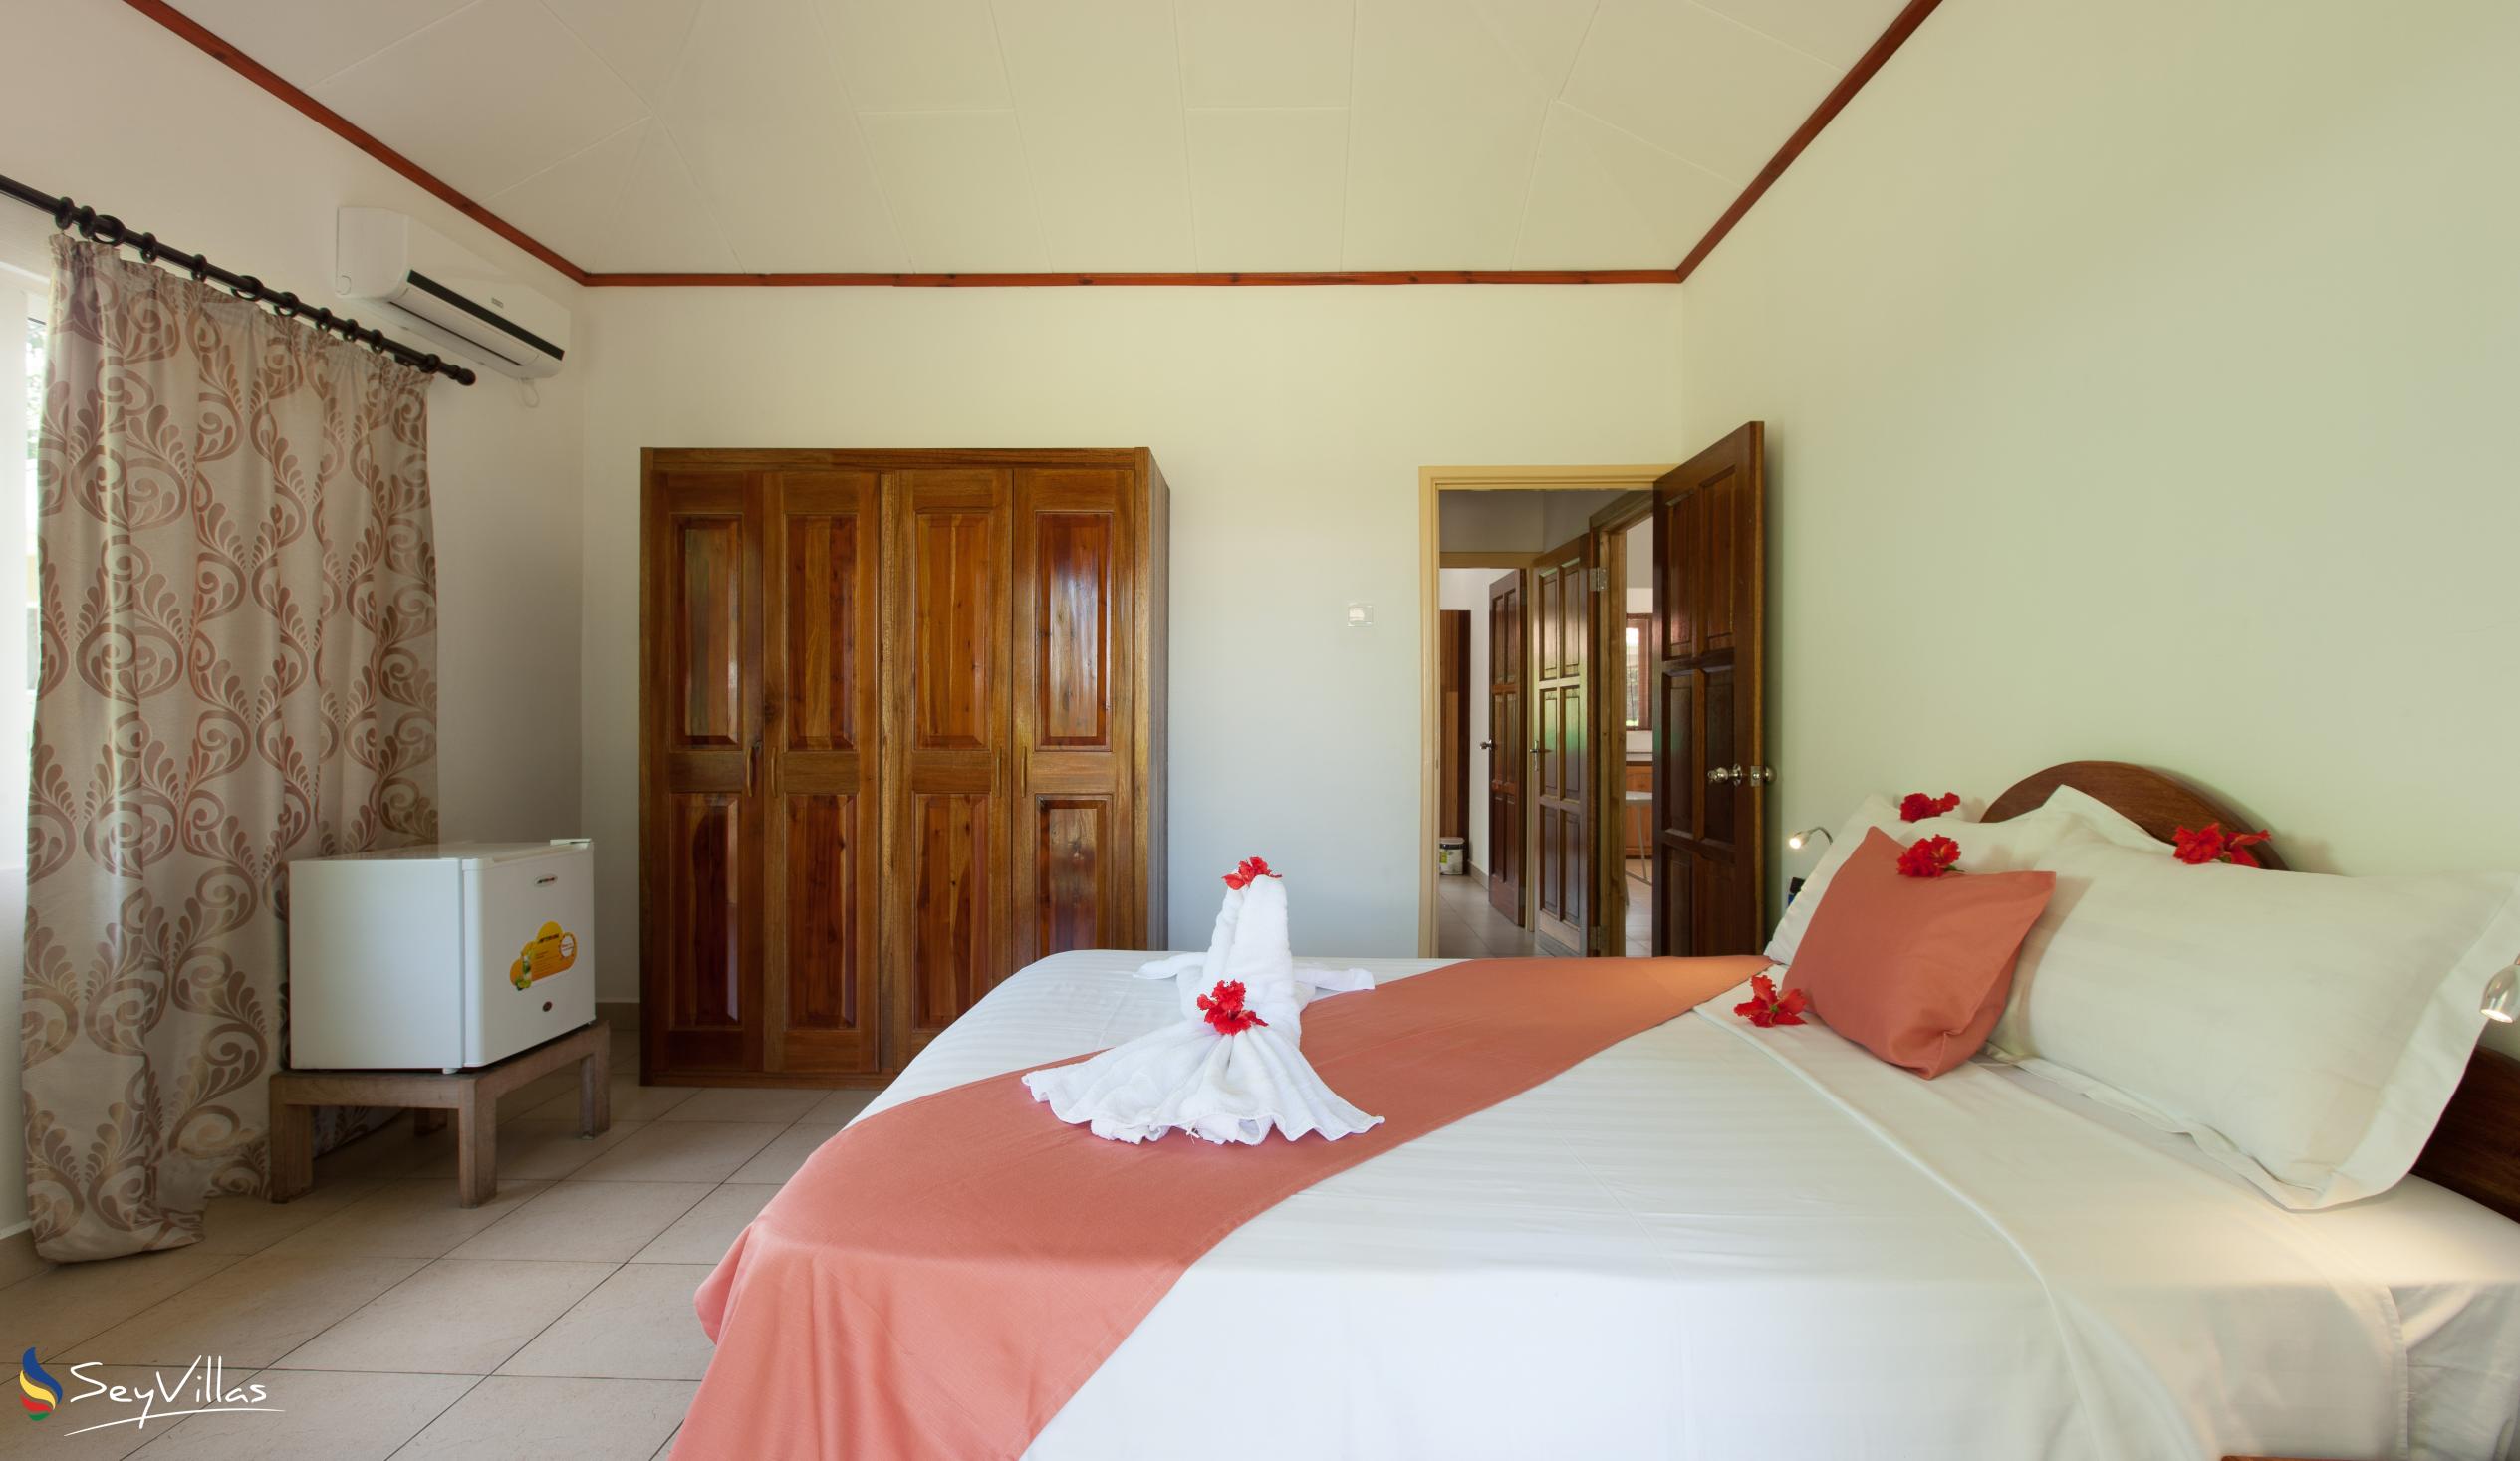 Photo 30: Hostellerie La Digue - 3-Bedroom Chalet - La Digue (Seychelles)